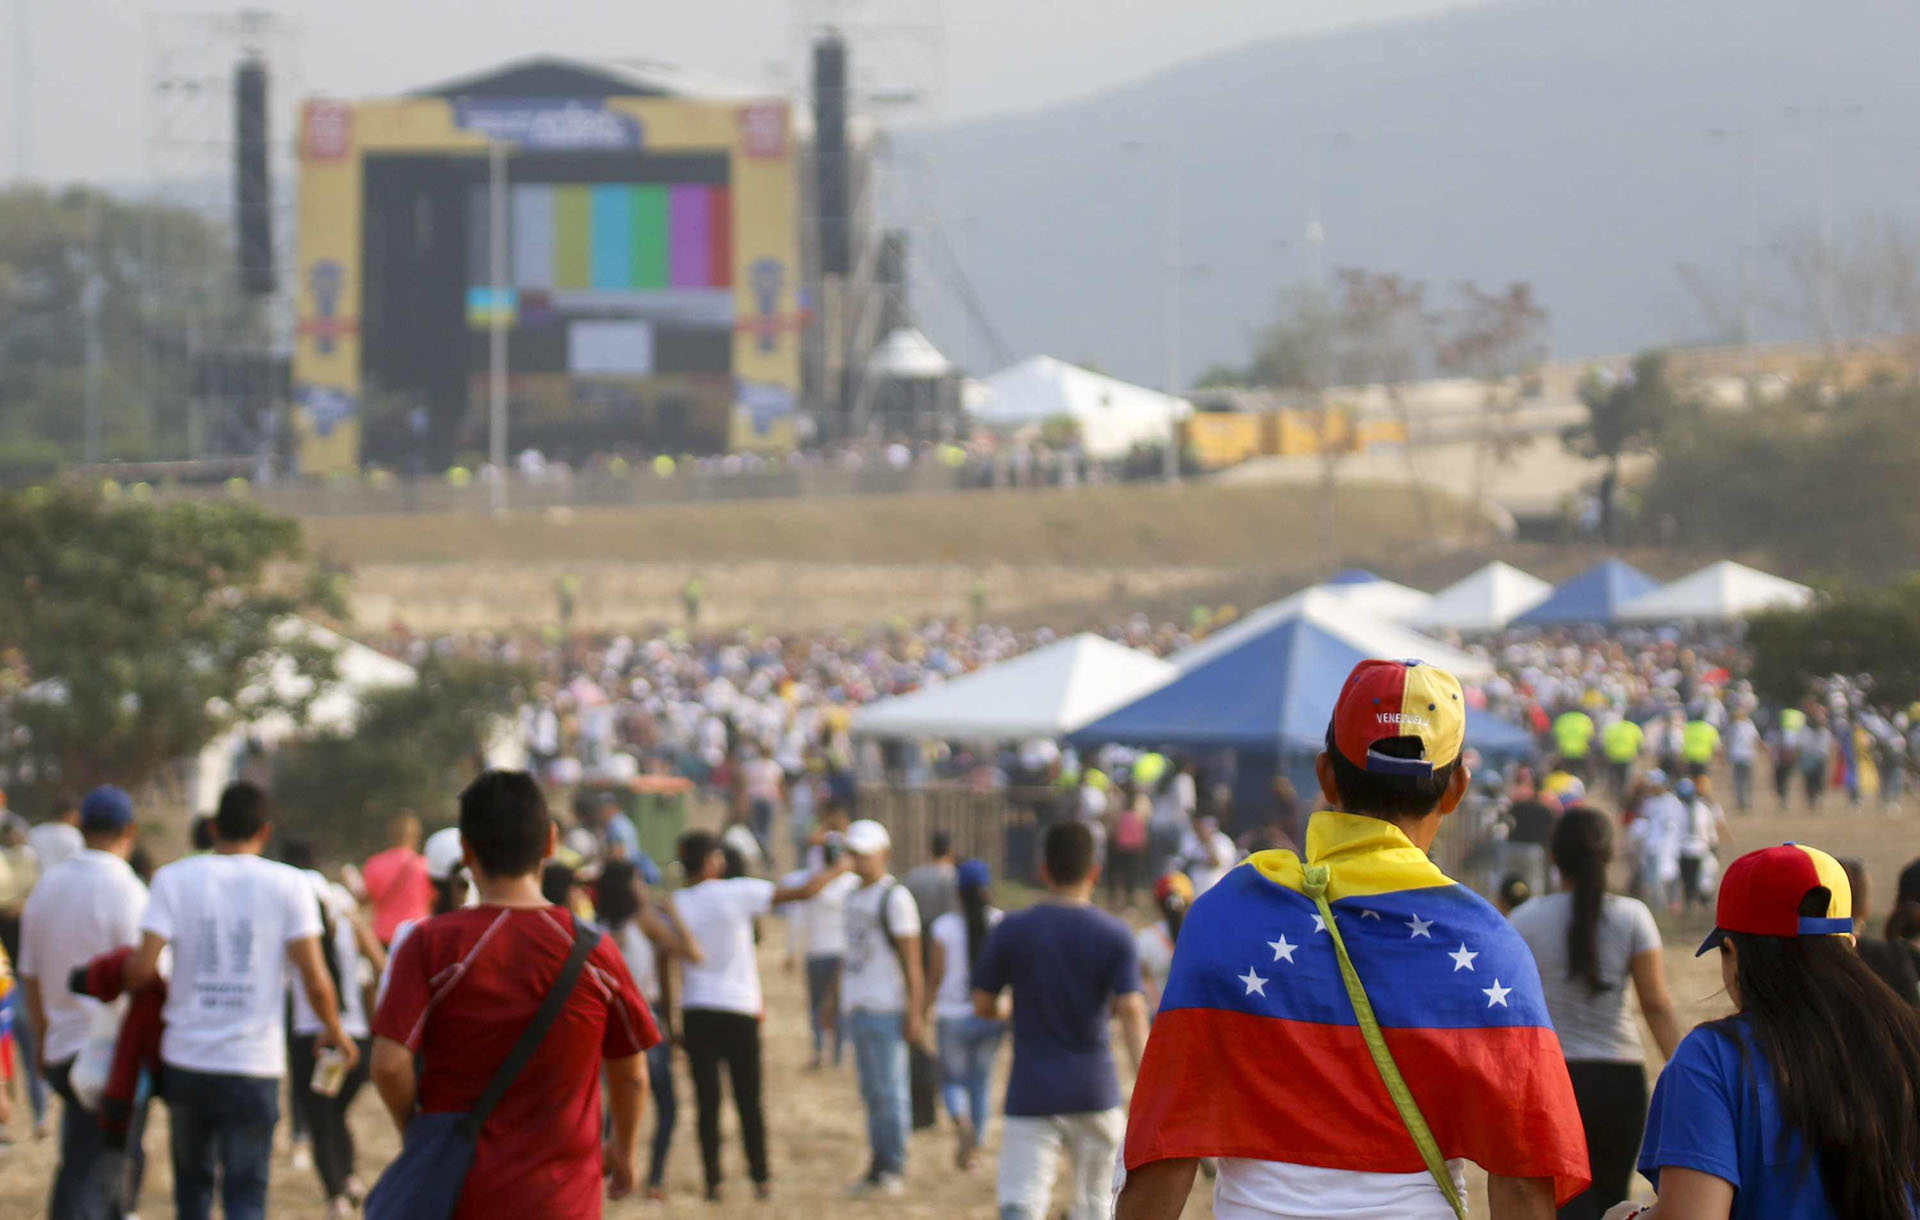 ¿Qué pasará ahora que terminó el Venezuela Aid Live?